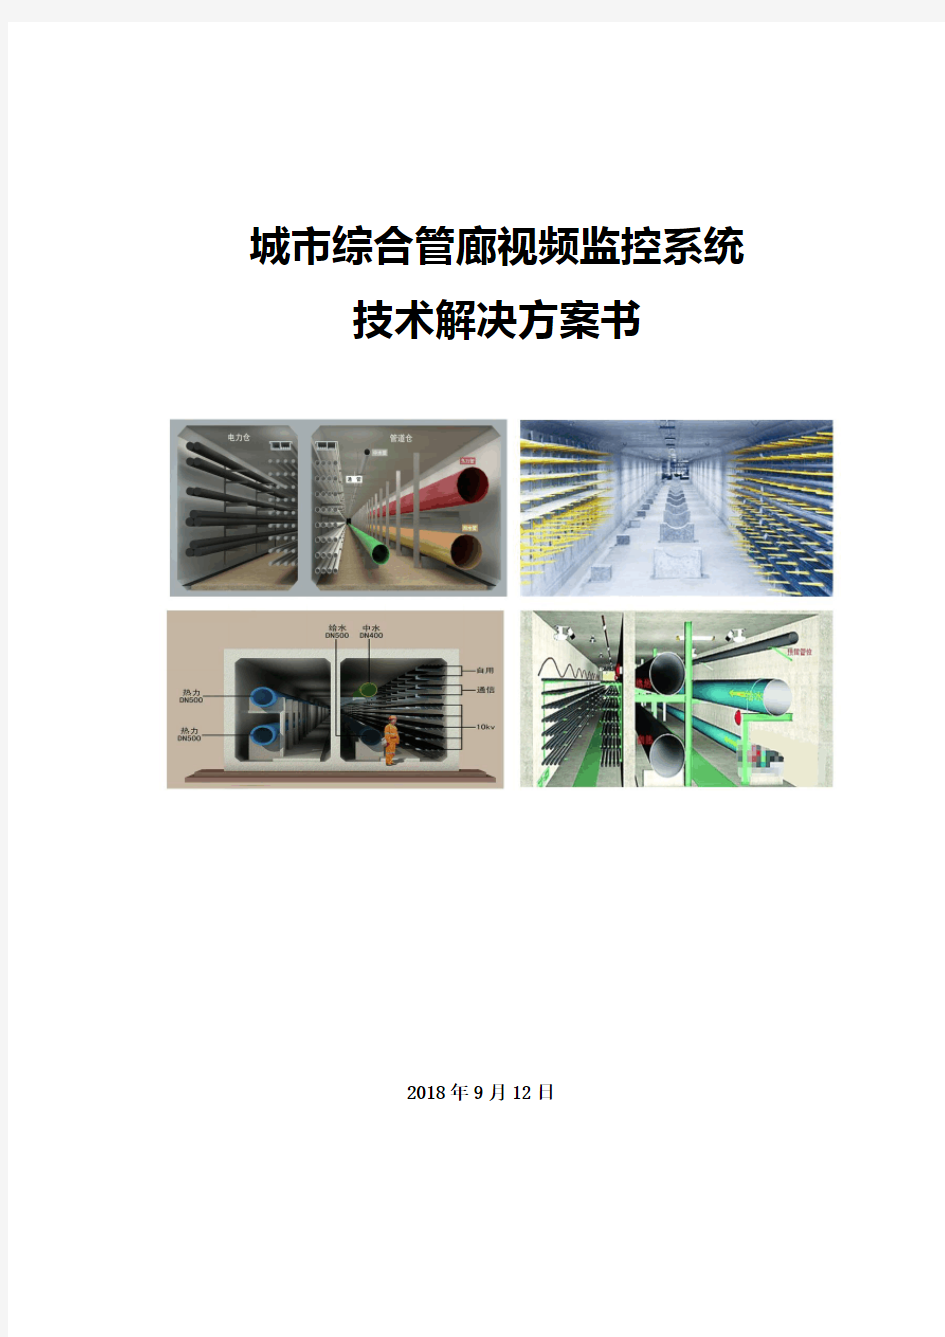 城市综合管廊视频监控系统技术解决方案书